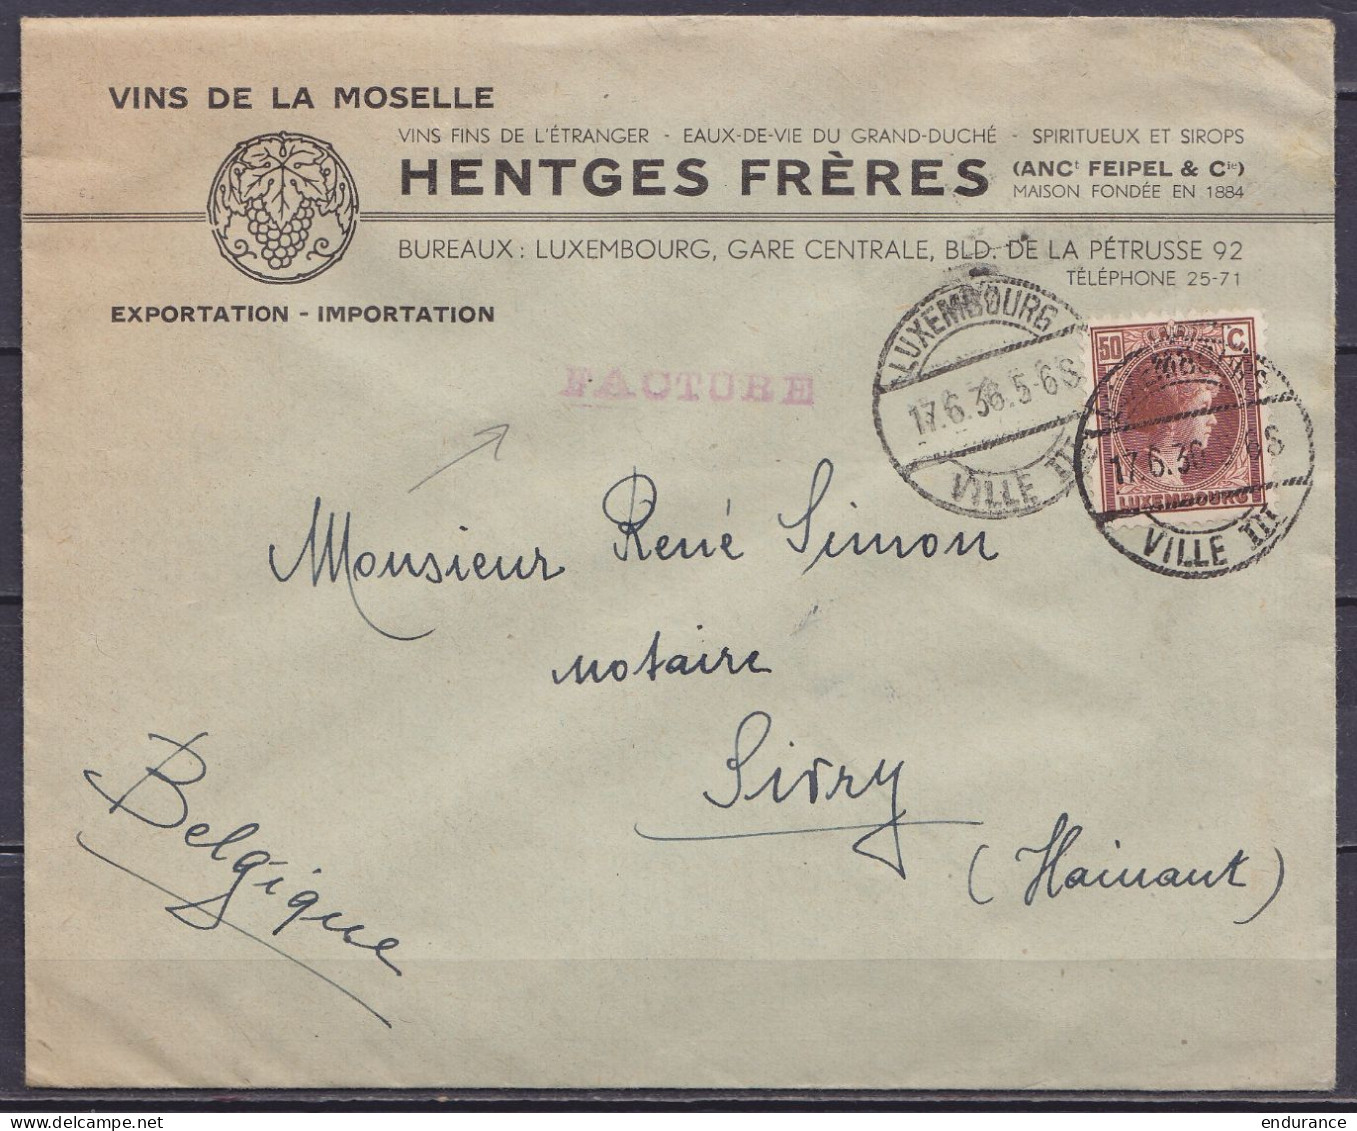 Luxembourg - L. Entête "Vins De La Moselle Hentges" Affr. 50c (tarif Facture) Càd "LUXEMBOURG /17.6.1936/ VILLE III" Pou - 1926-39 Charlotte De Profil à Droite